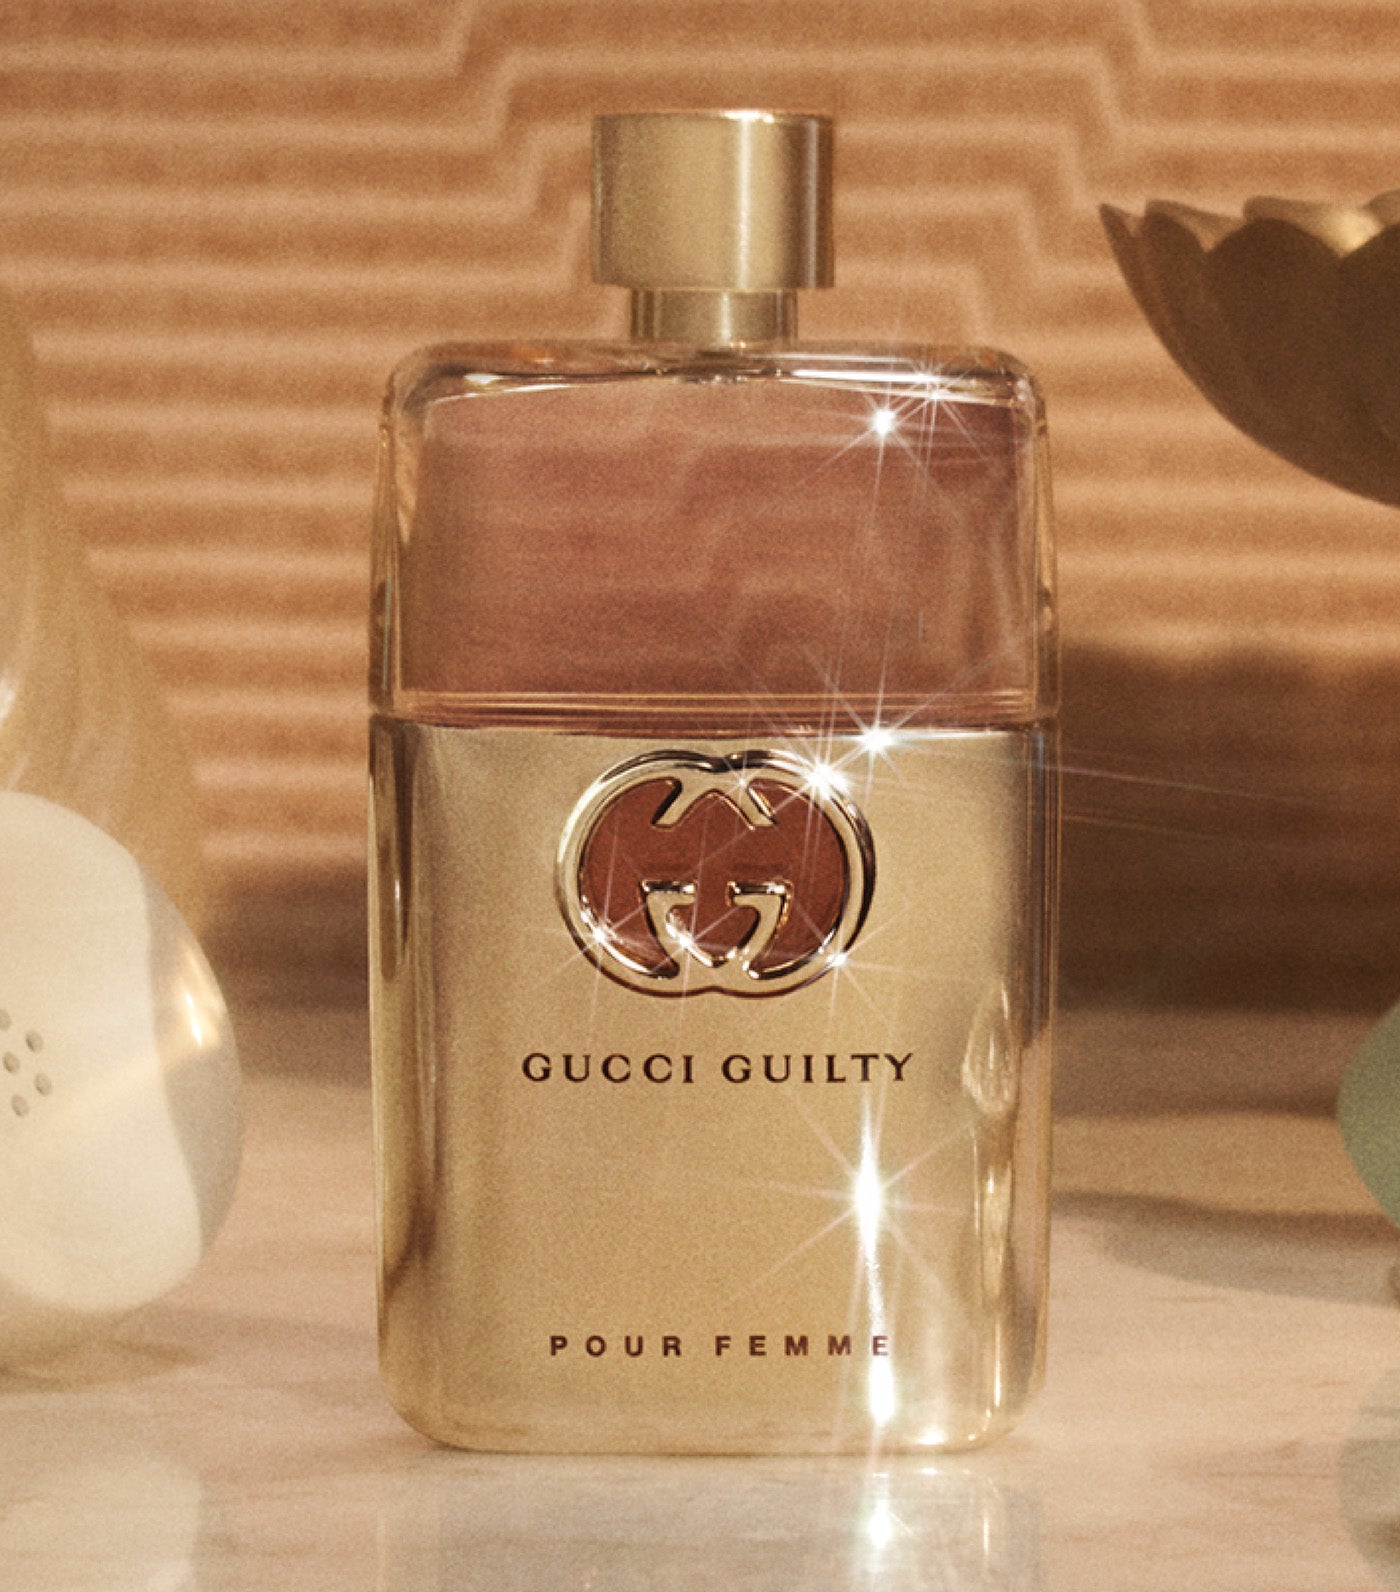 Fragrances Parfum Guilty Femme Gucci Eau Pour Gucci de by